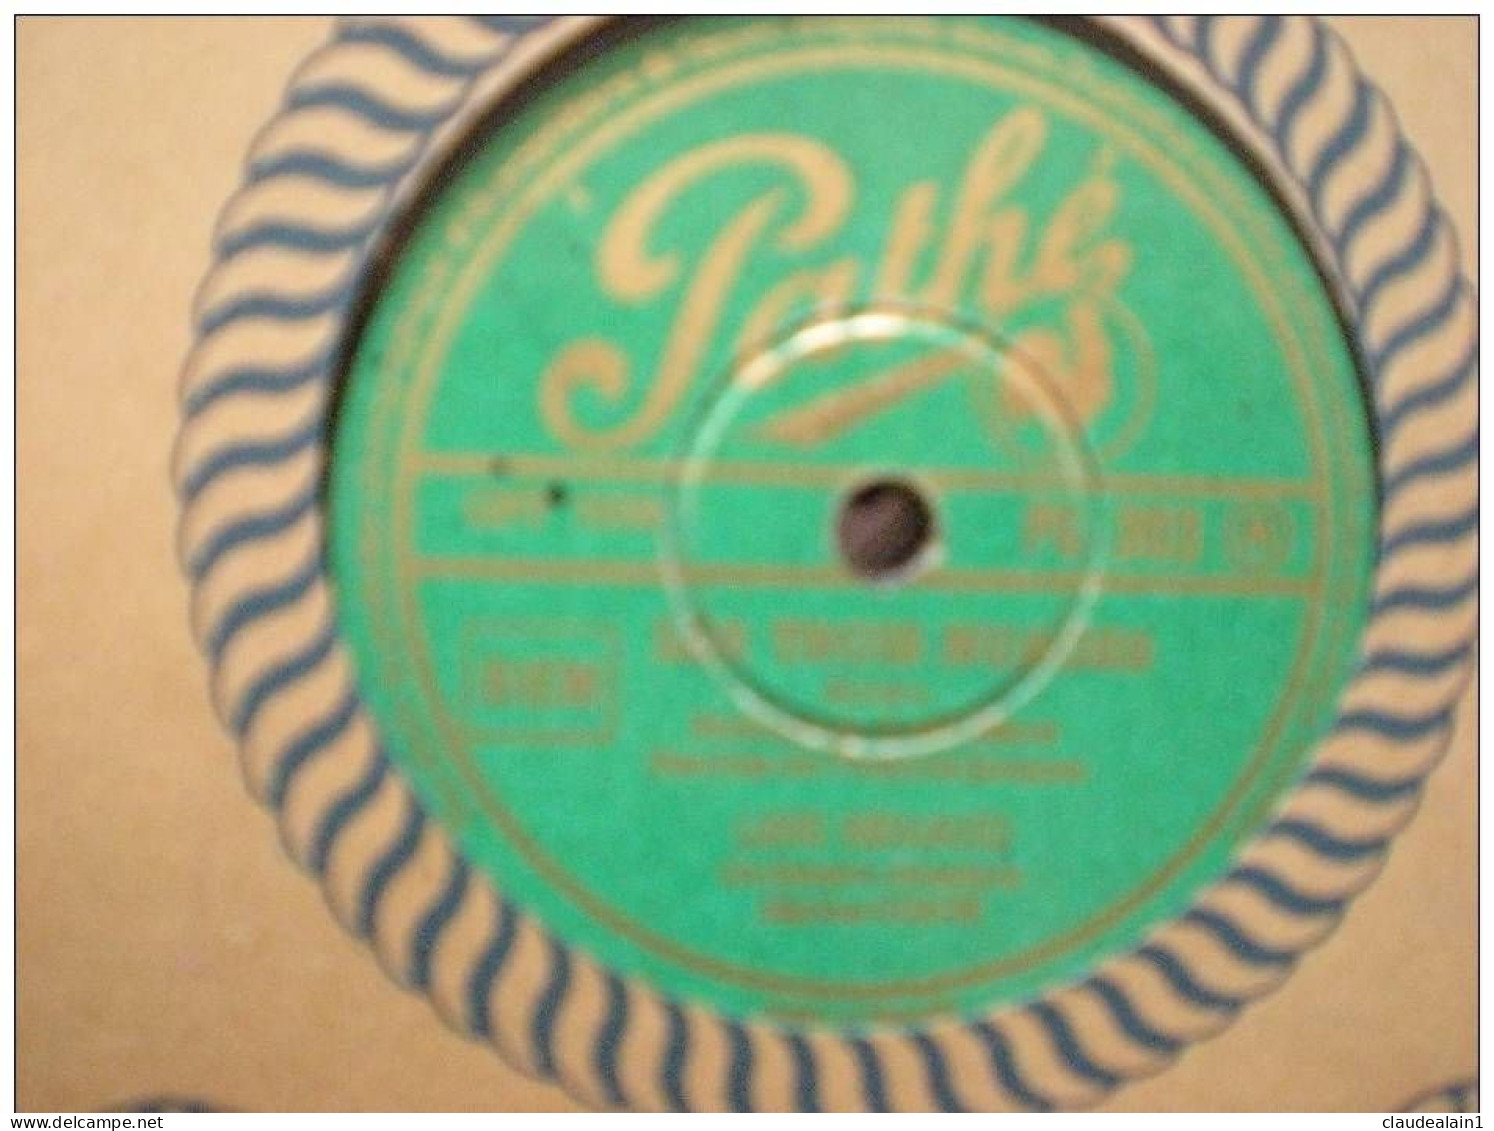 DISQUE PATHE VINYLE 78T - LINE RENAUD - LES TROIS NUAGES - TES YEUX BLEUS - 78 Rpm - Gramophone Records